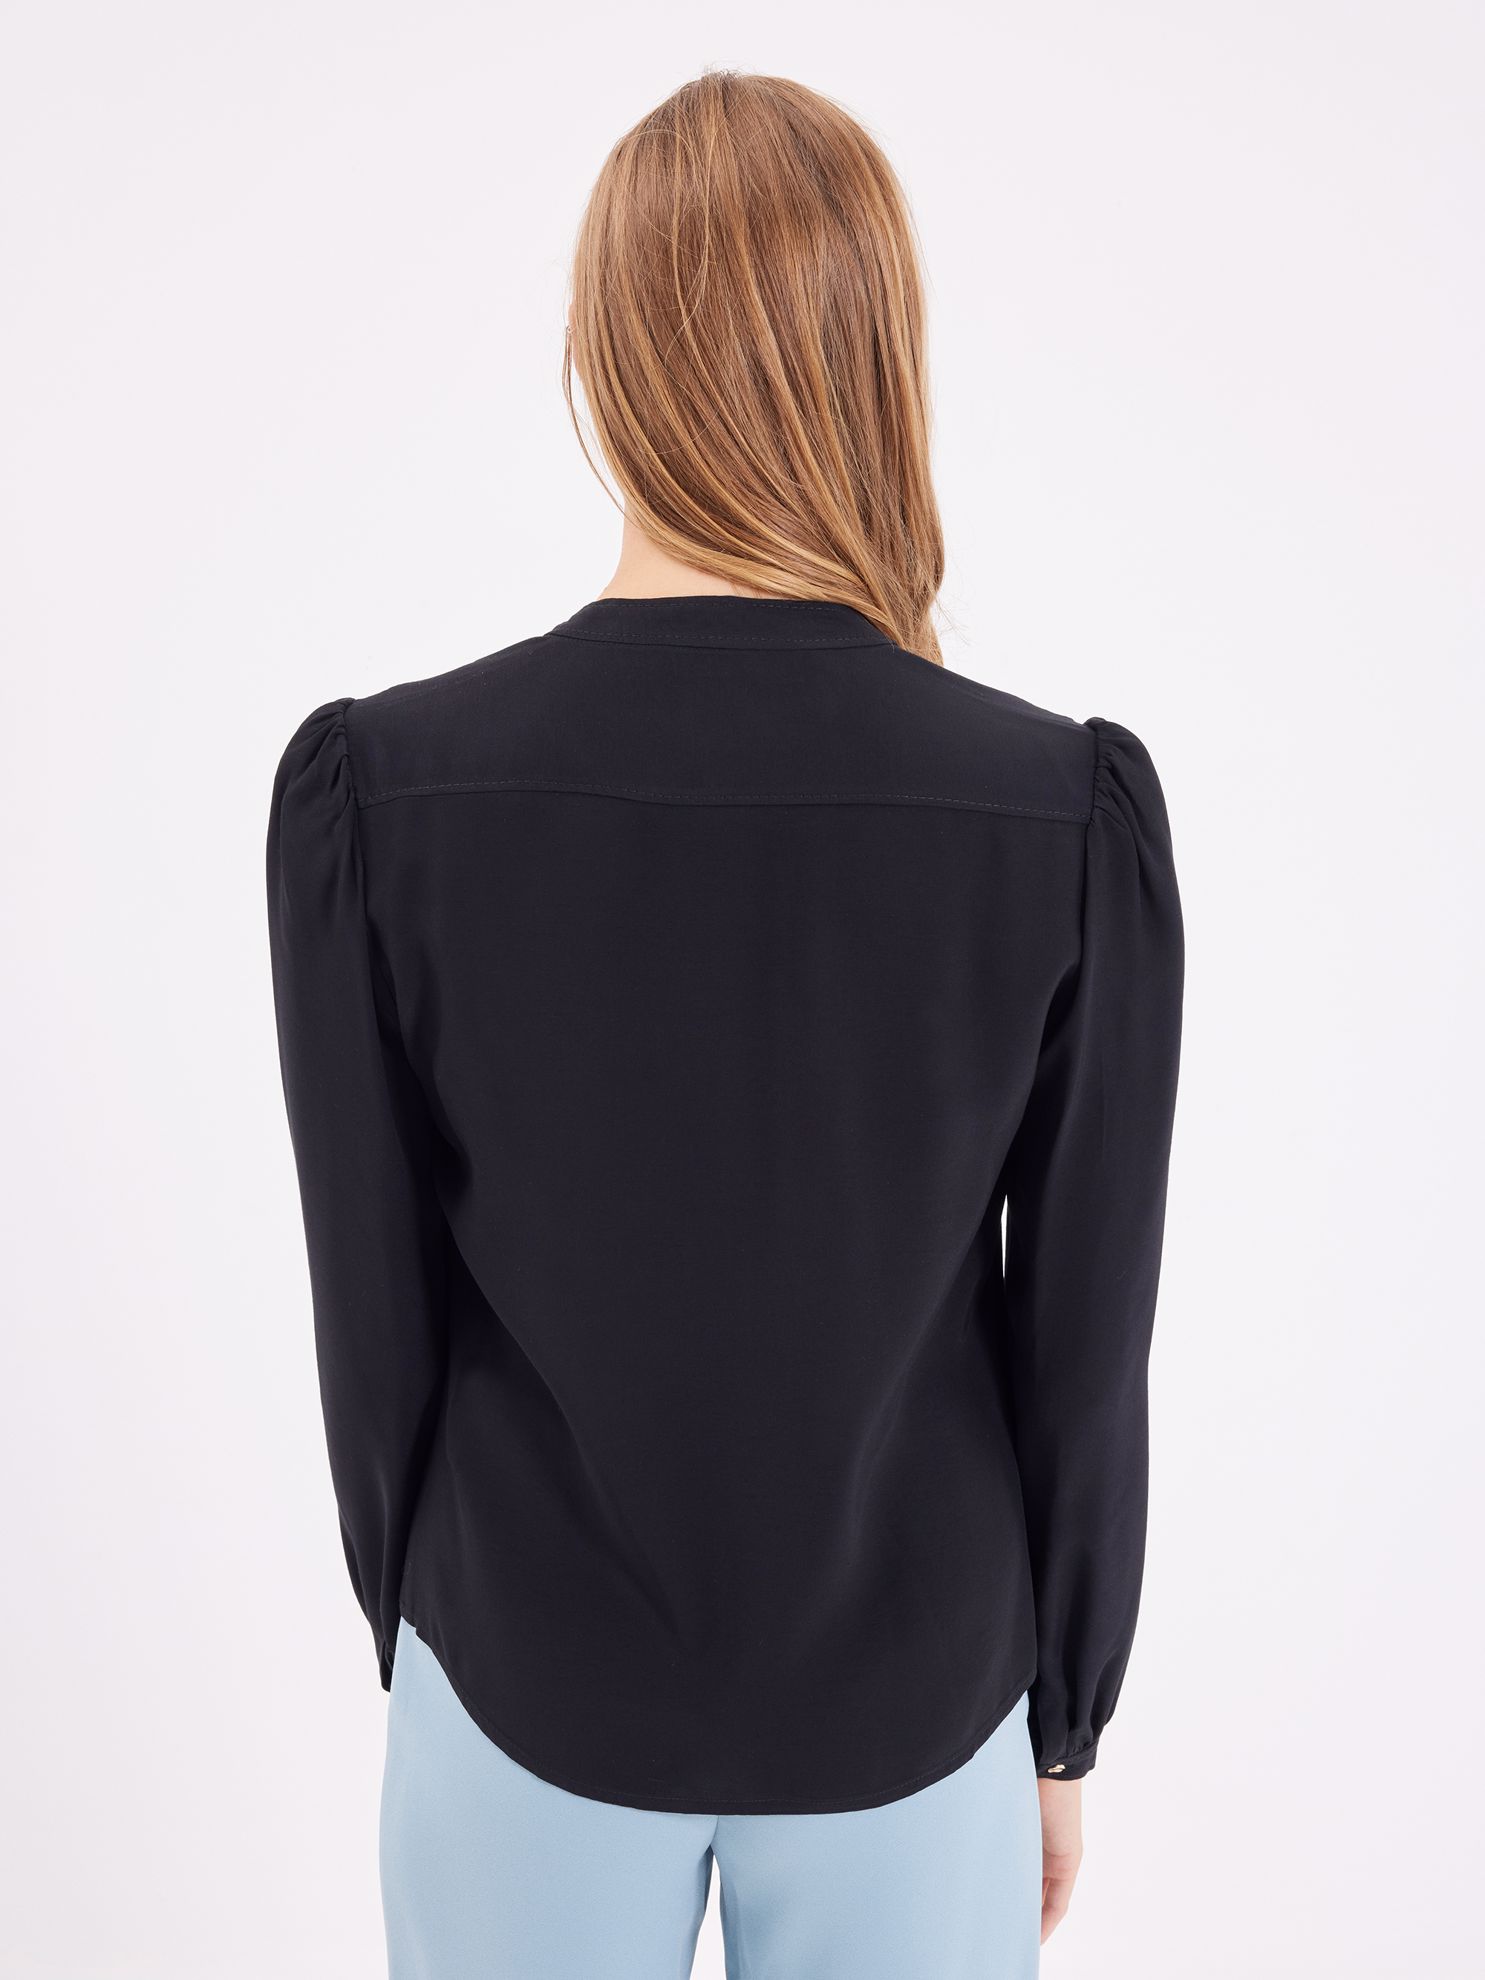 Karaca Kadın Bluz-Siyah. ürün görseli